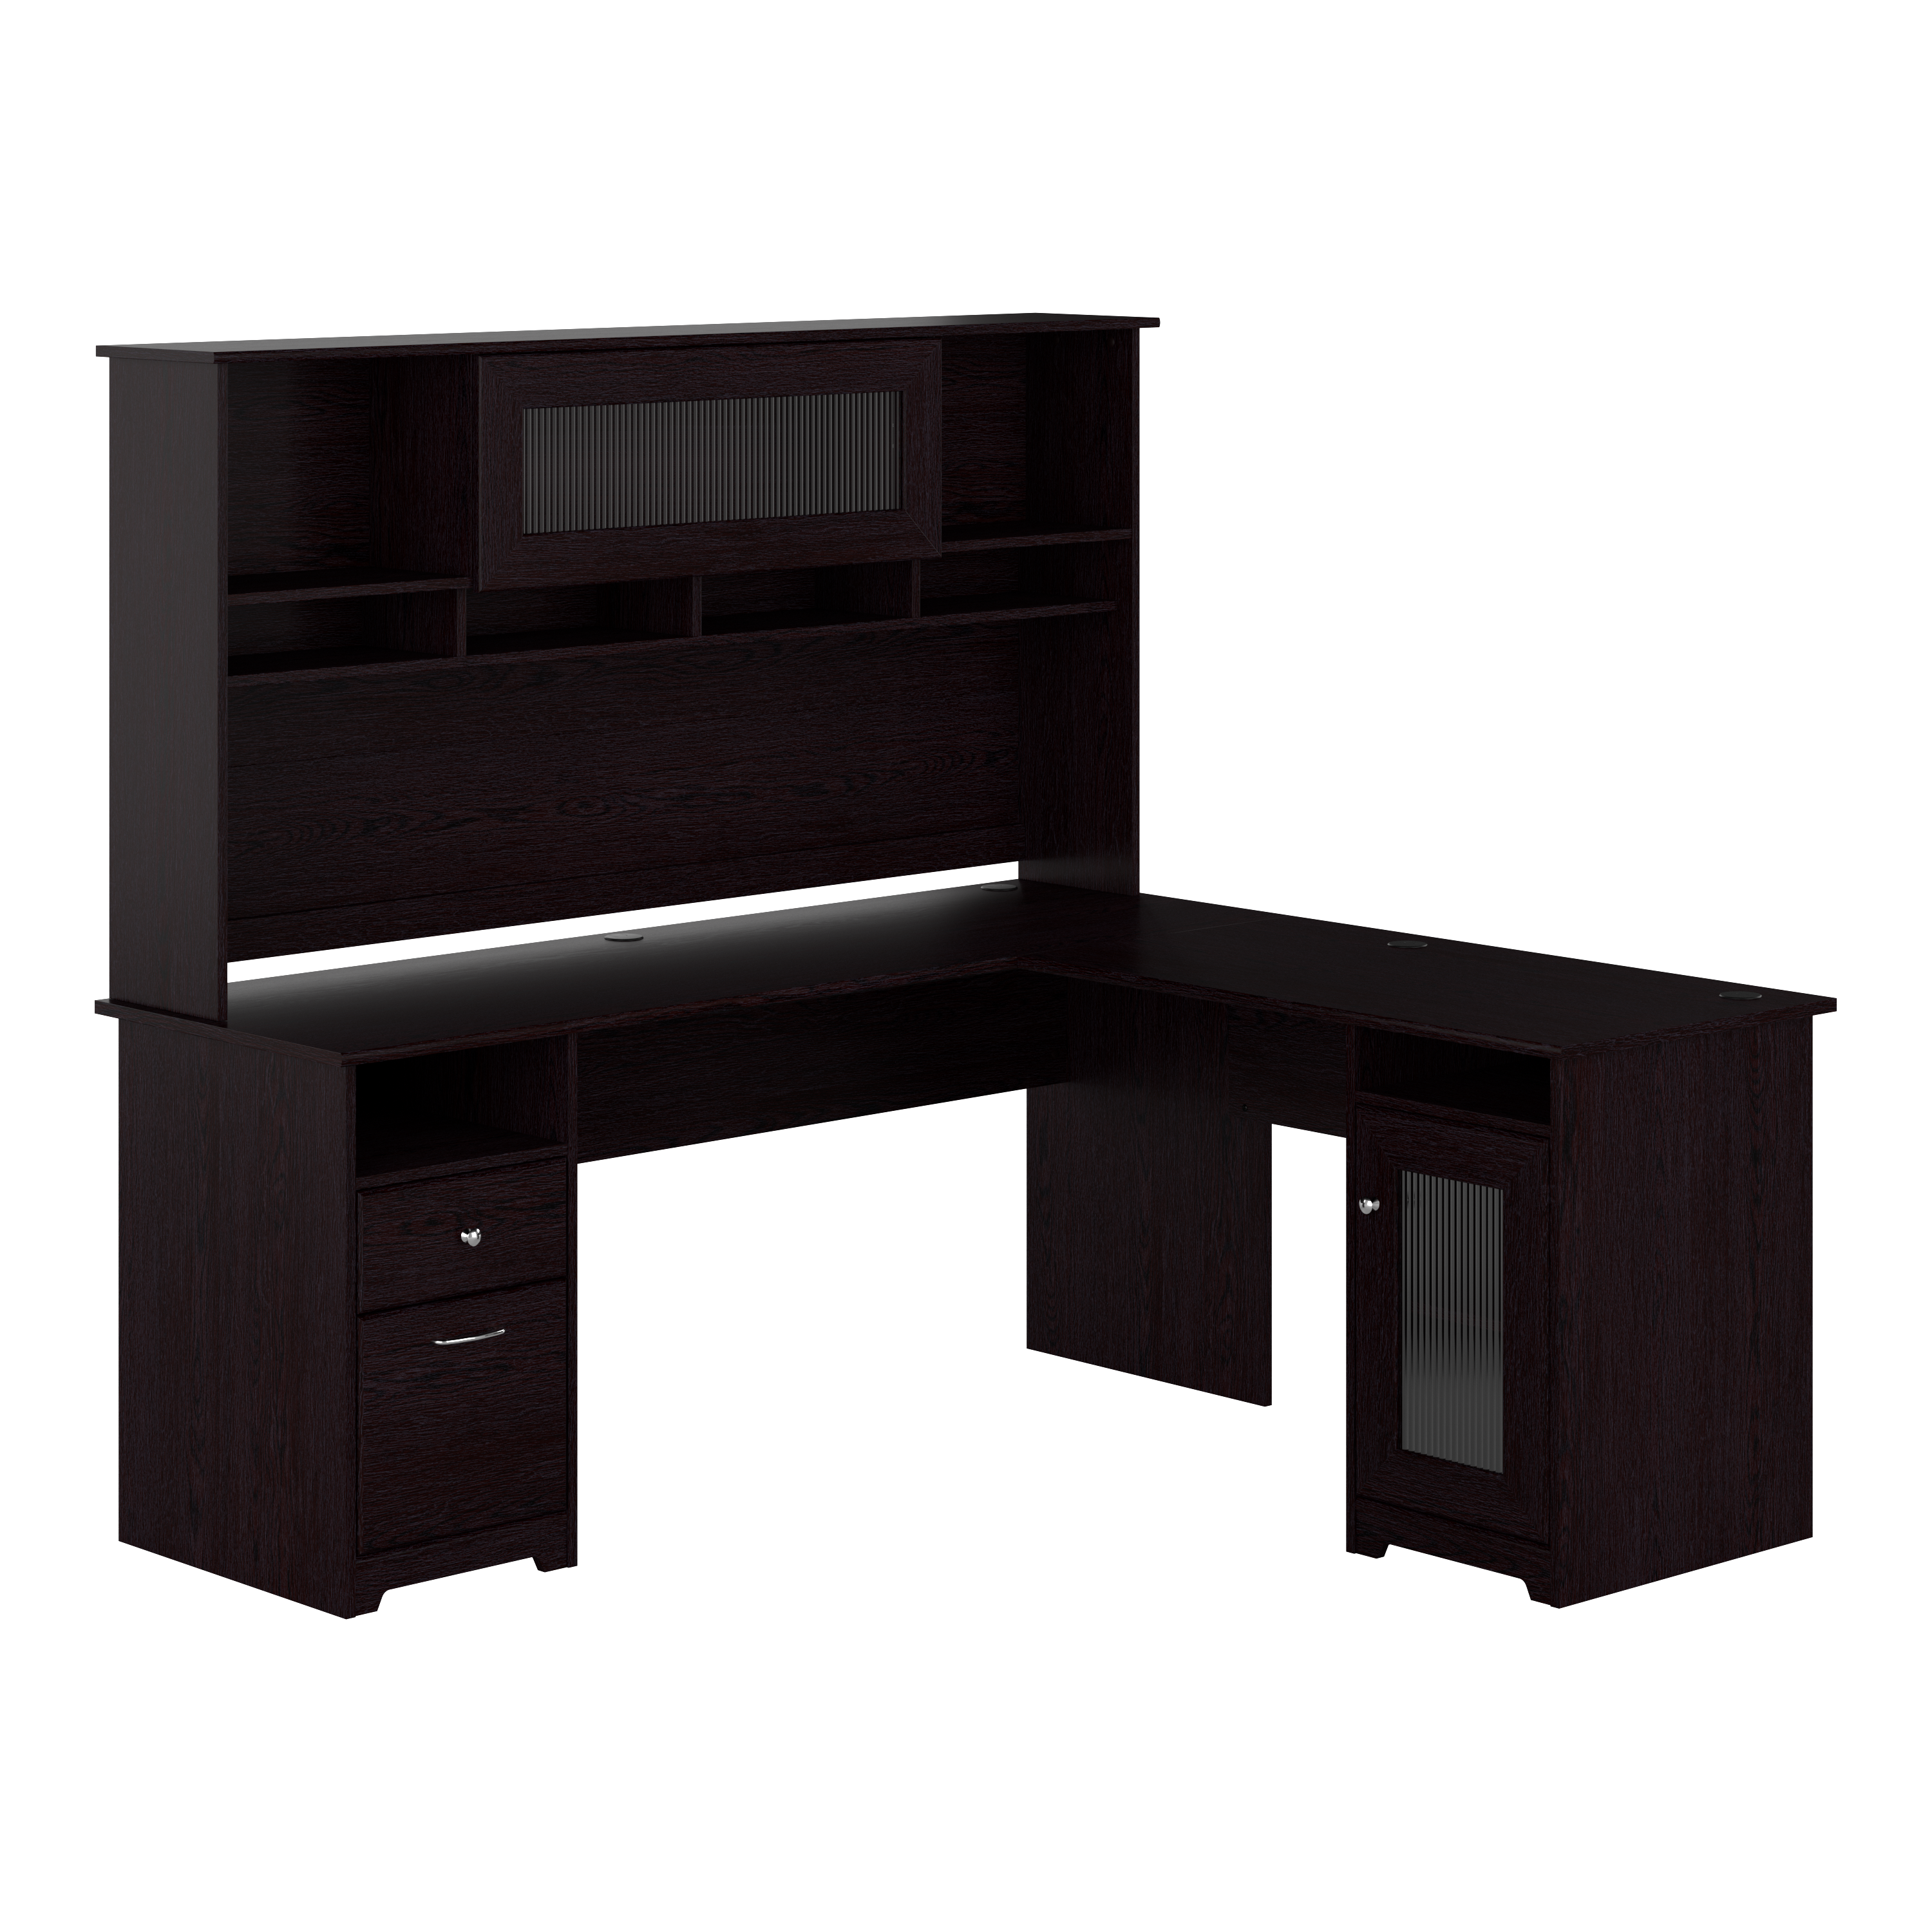 Shop Bush Furniture Cabot 72W L Shaped Computer Desk with Hutch and Storage 02 CAB073EPO #color_espresso oak